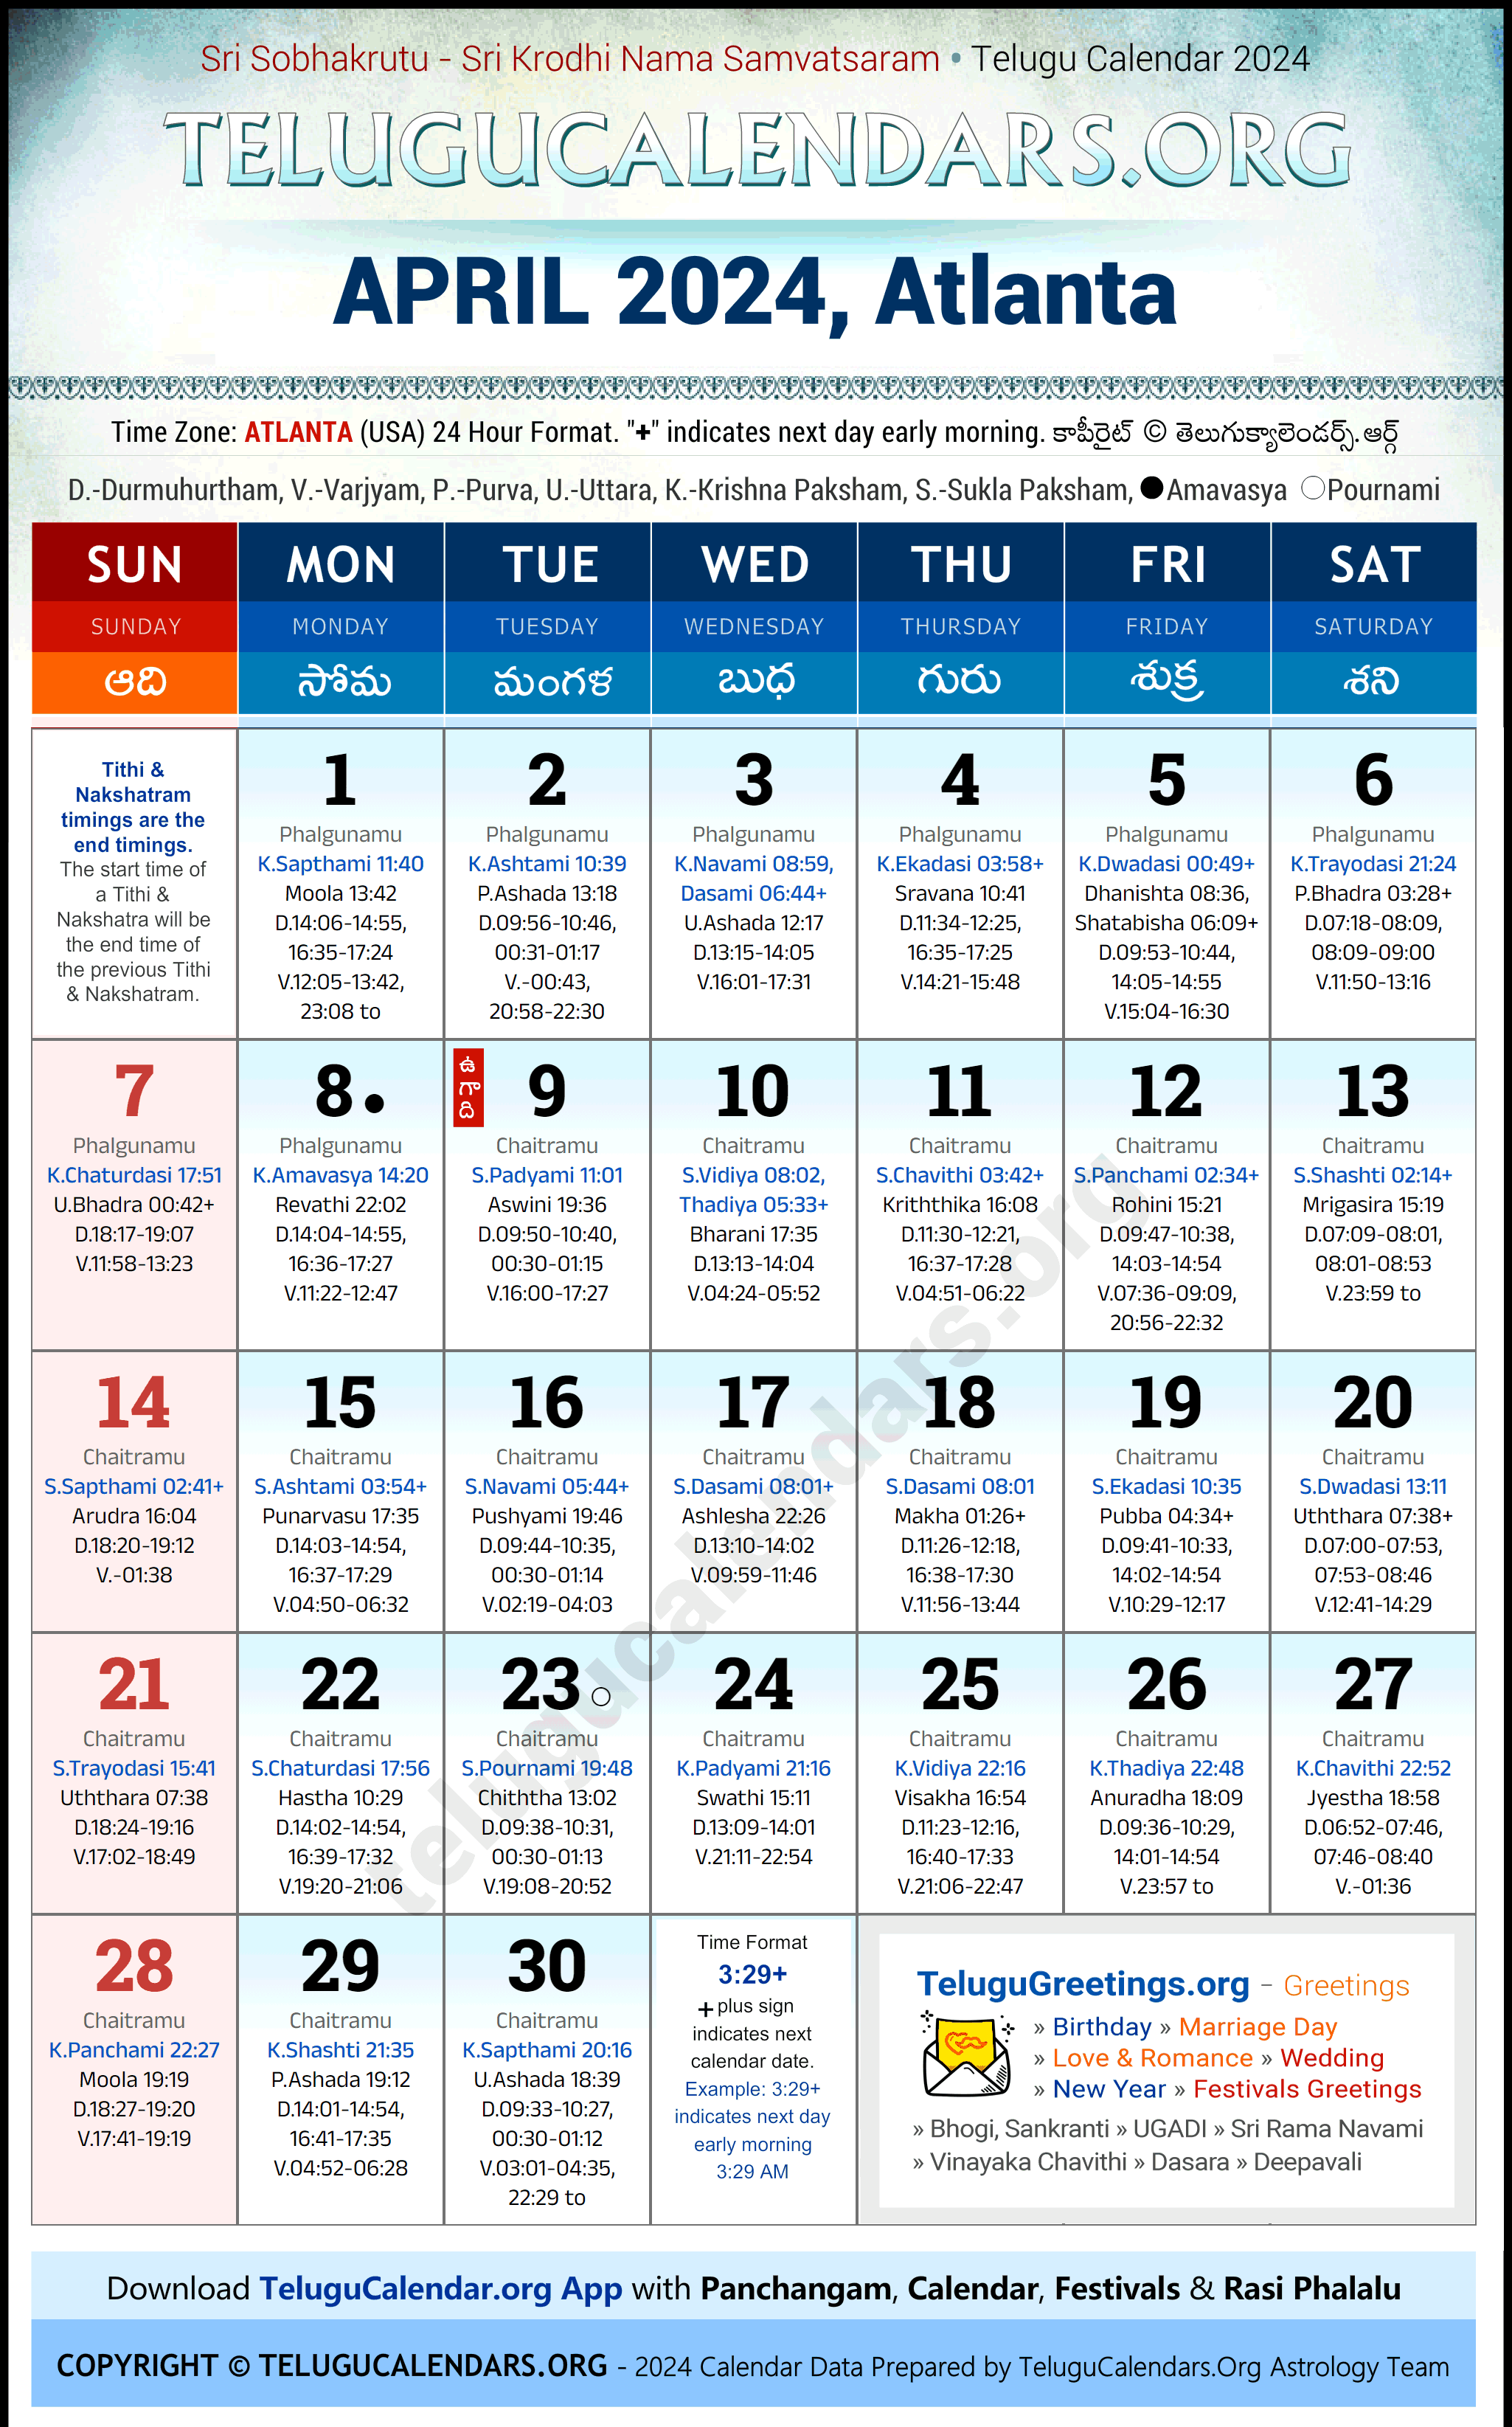 Telugu Calendar 2024 April Festivals for Atlanta